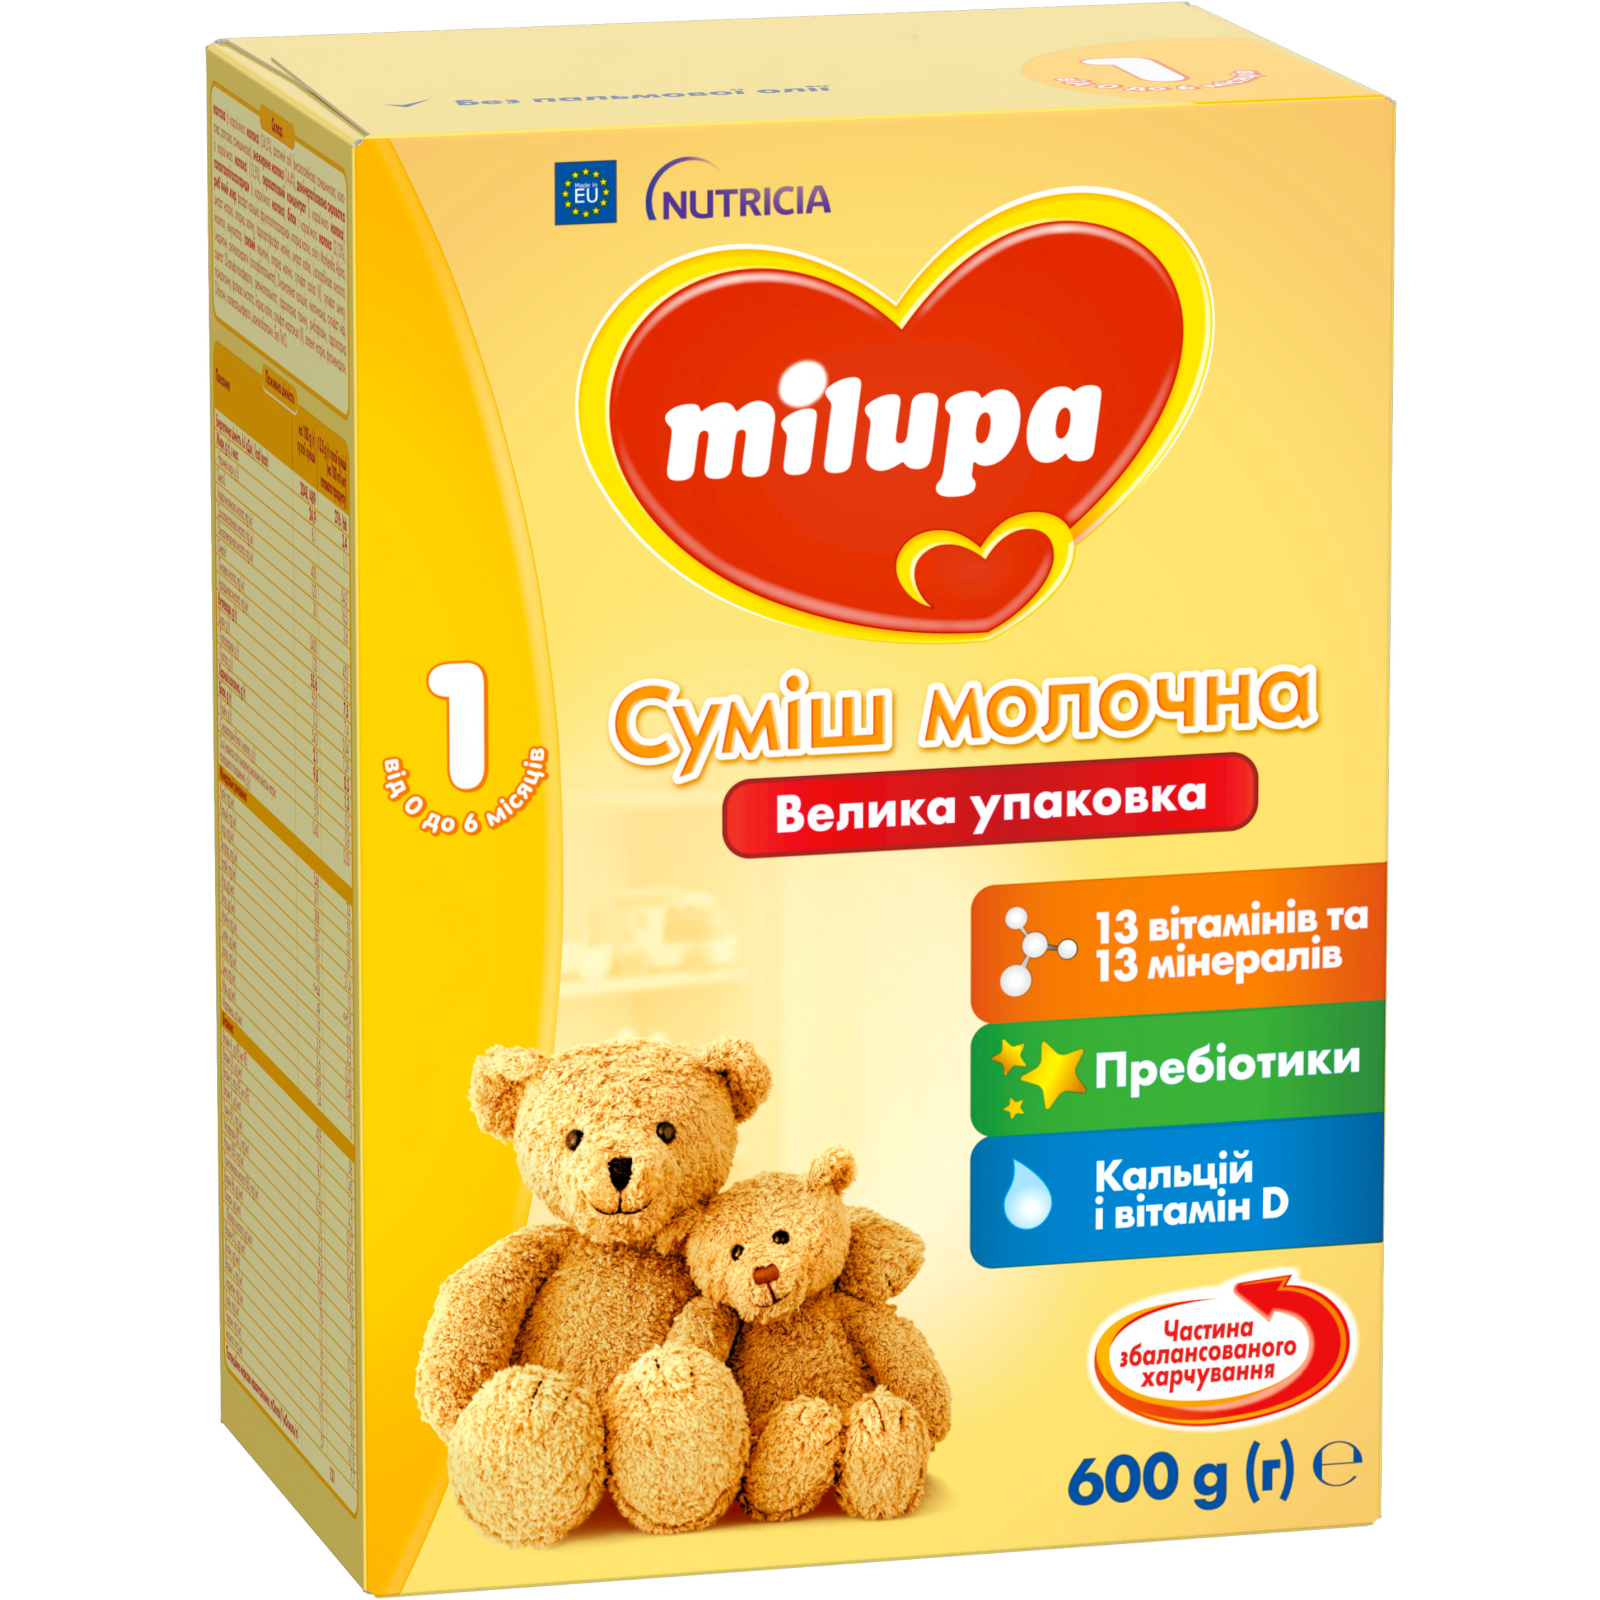 Детская смесь Milupa 1 молочная 600 гр (5900852025495) изображение 2